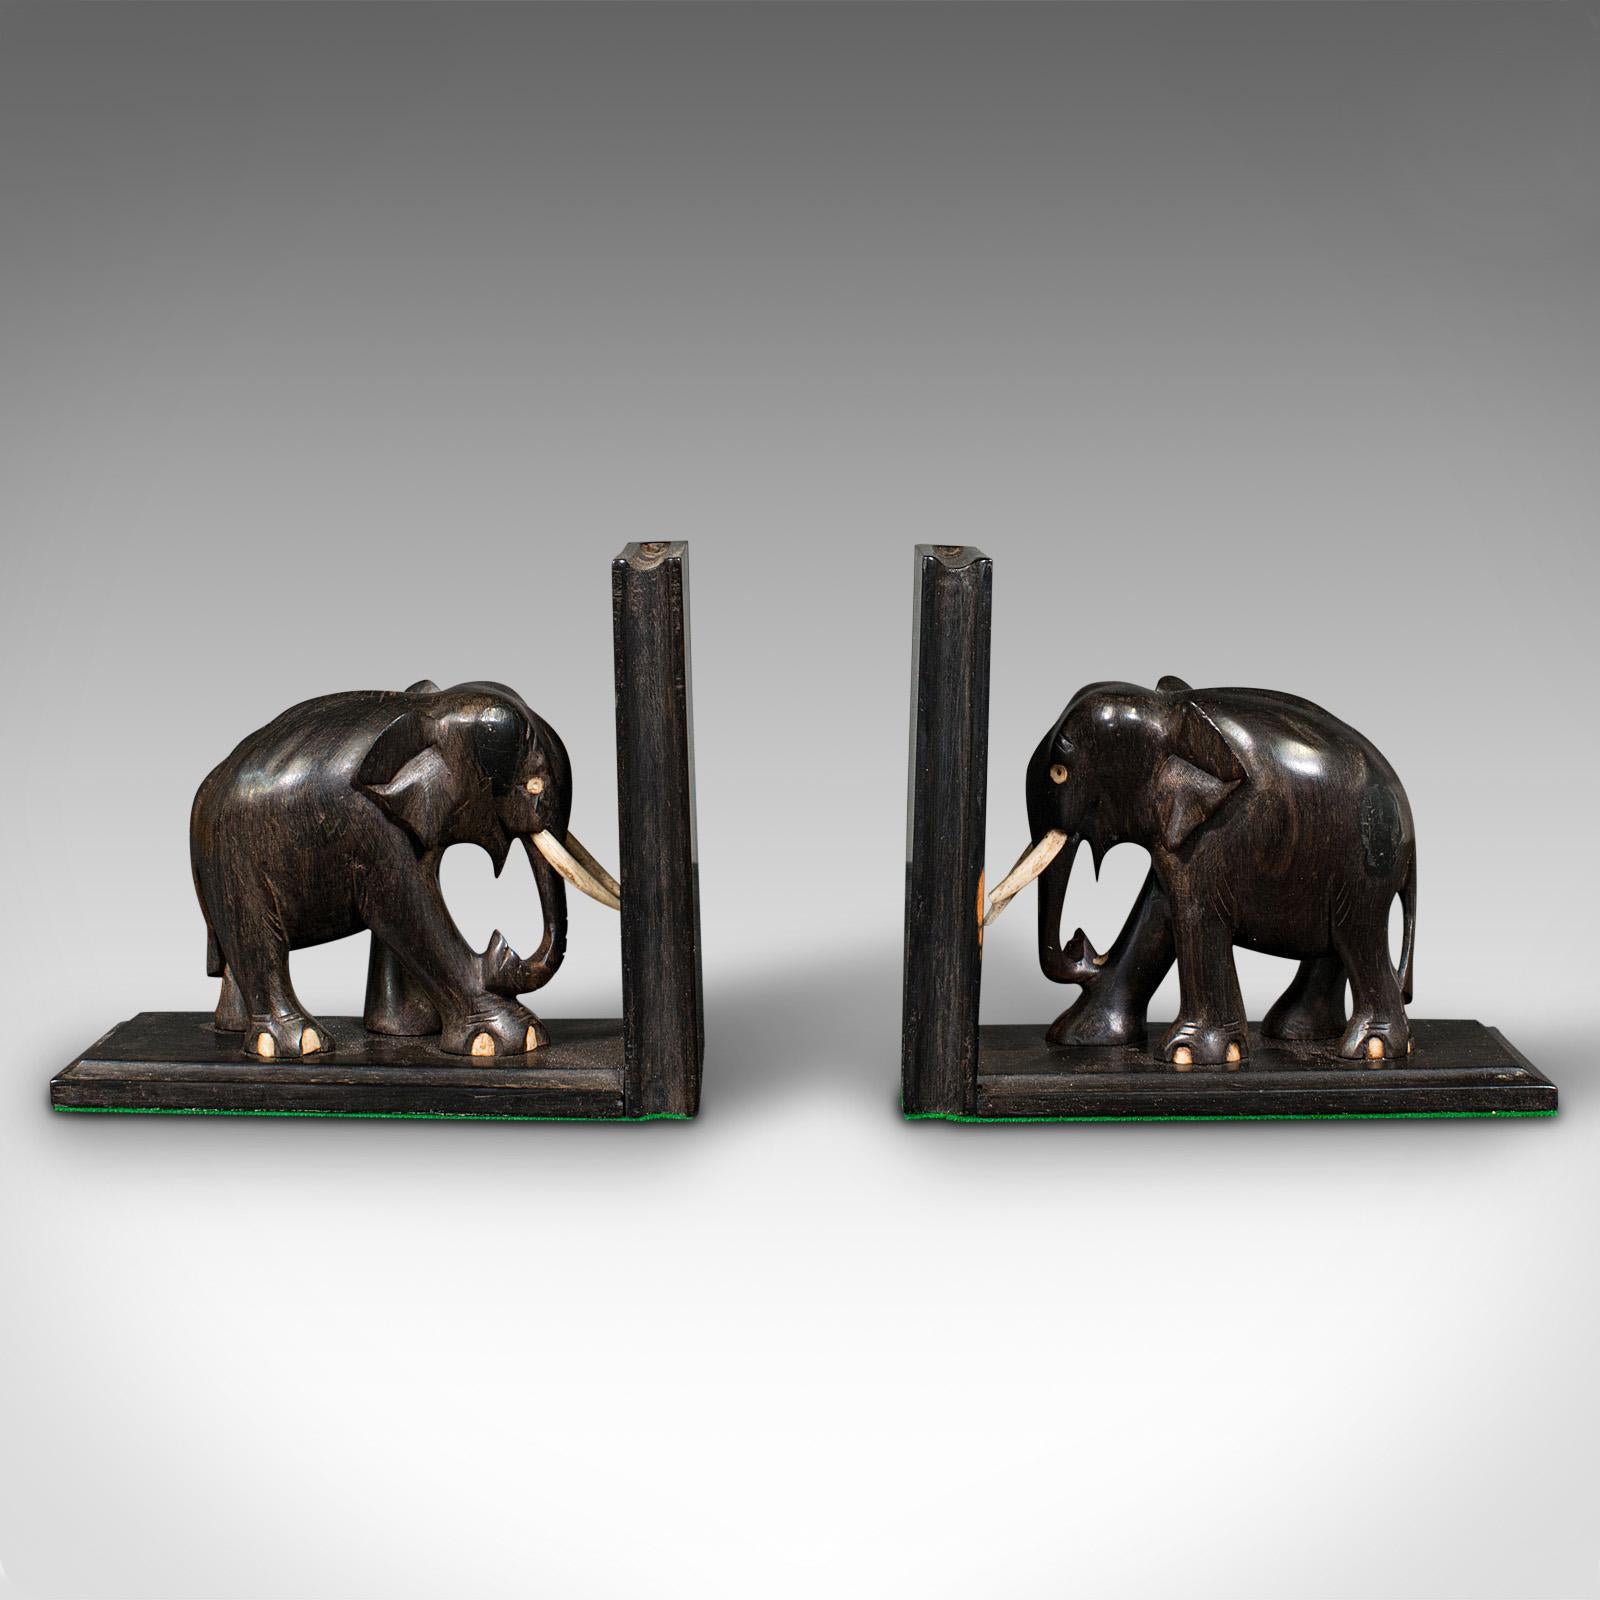 Dies ist ein Paar von kleinen antiken Elefanten Buchstützen. Eine anglo-indische, aus Ebenholz und Knochen geschnitzte Roman- oder Buchablage aus der späten viktorianischen Zeit, um 1890.

Ausgestattet mit reichlich Charakter und Appell an den